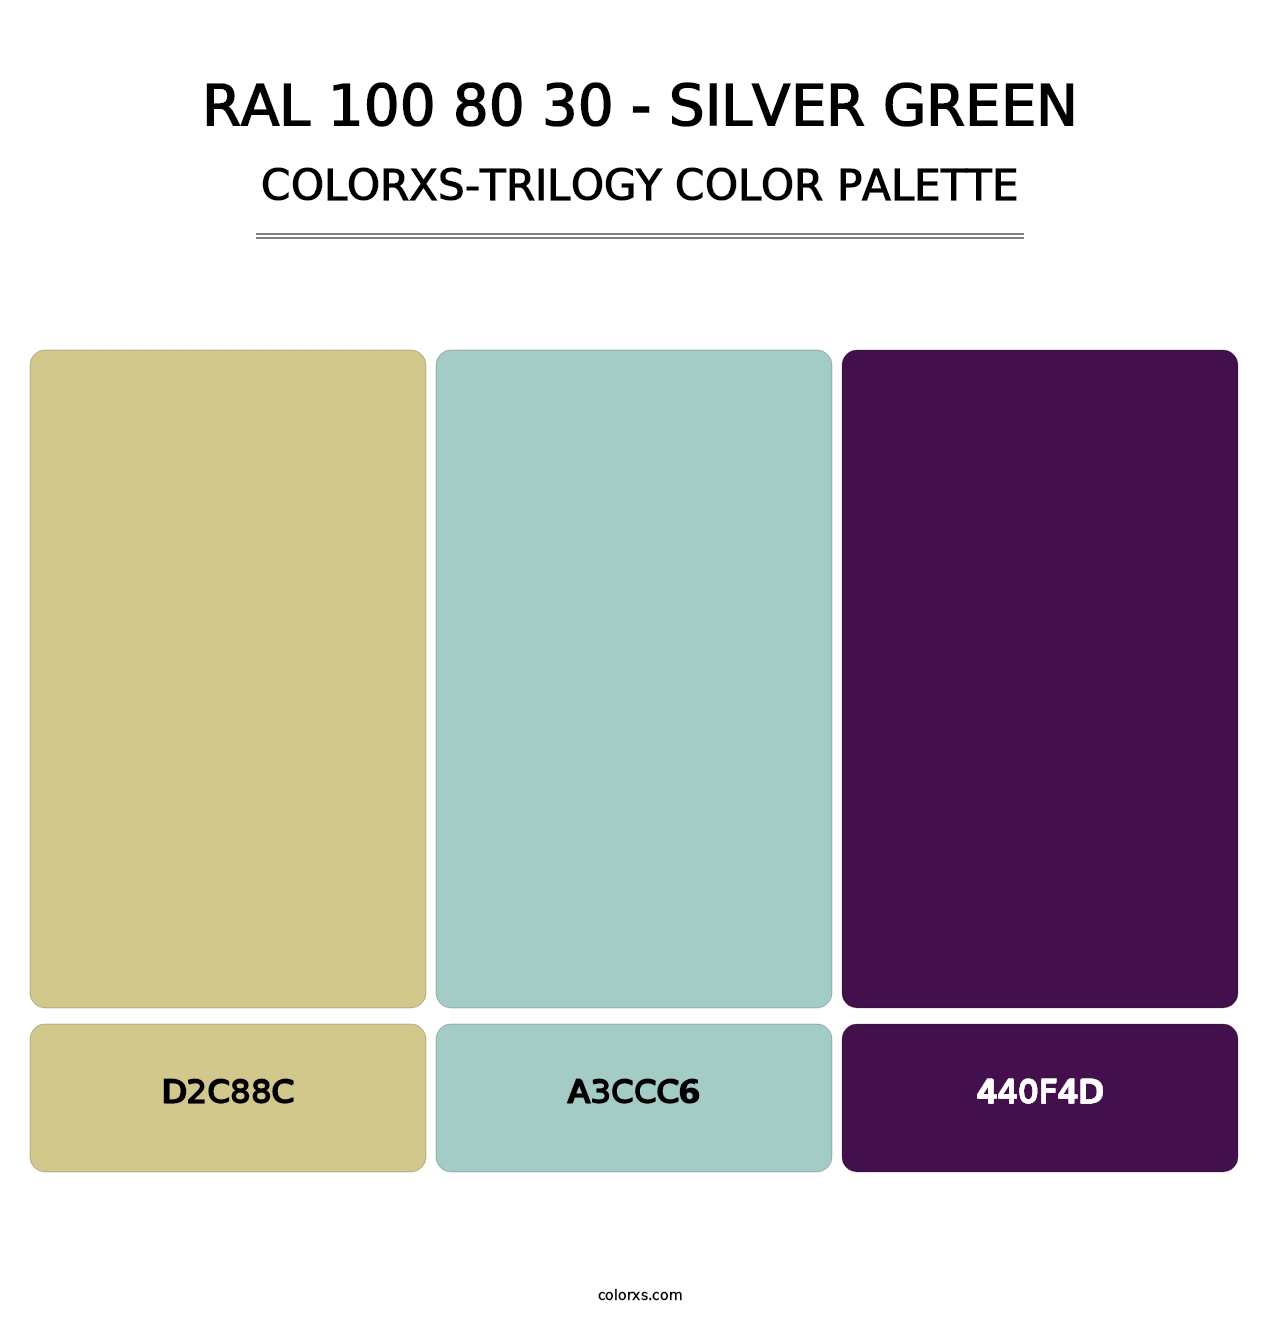 RAL 100 80 30 - Silver Green - Colorxs Trilogy Palette